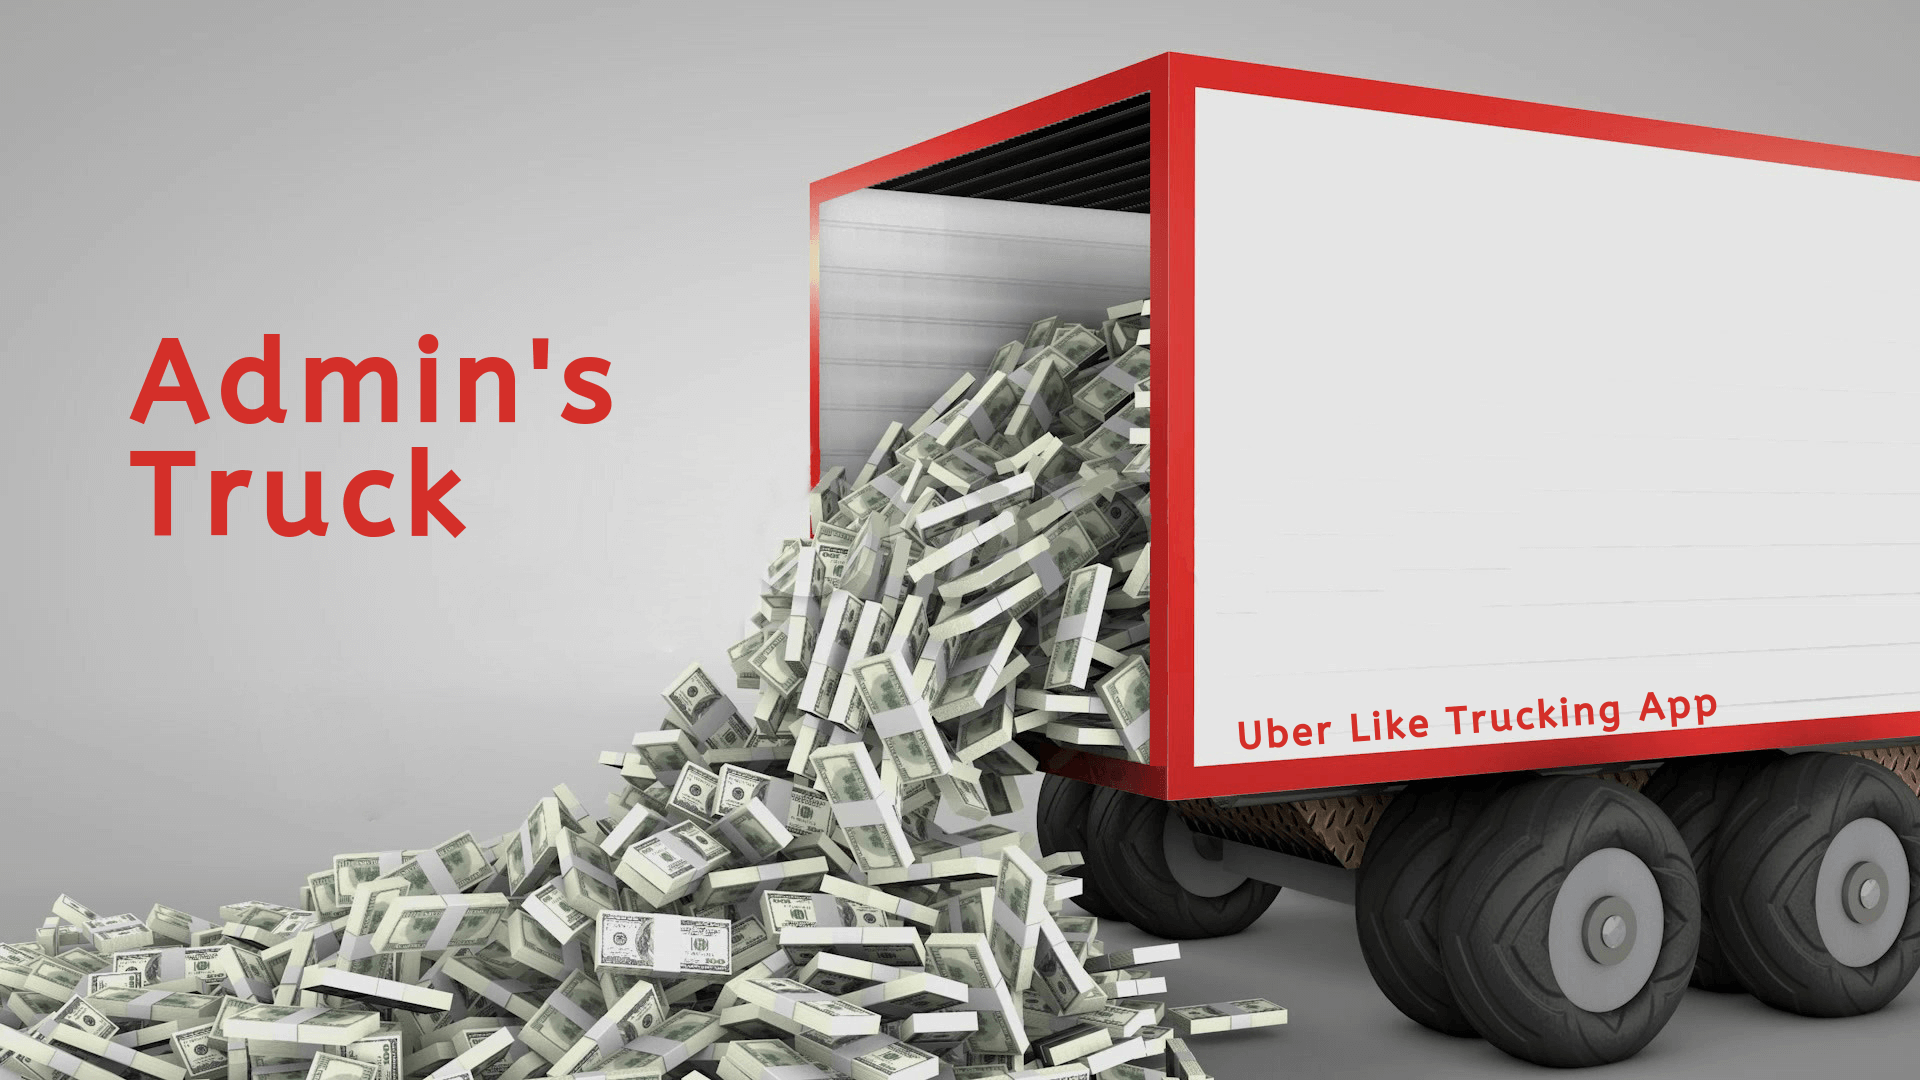 Revenue-from-Uber-like-trucking-app-development.png